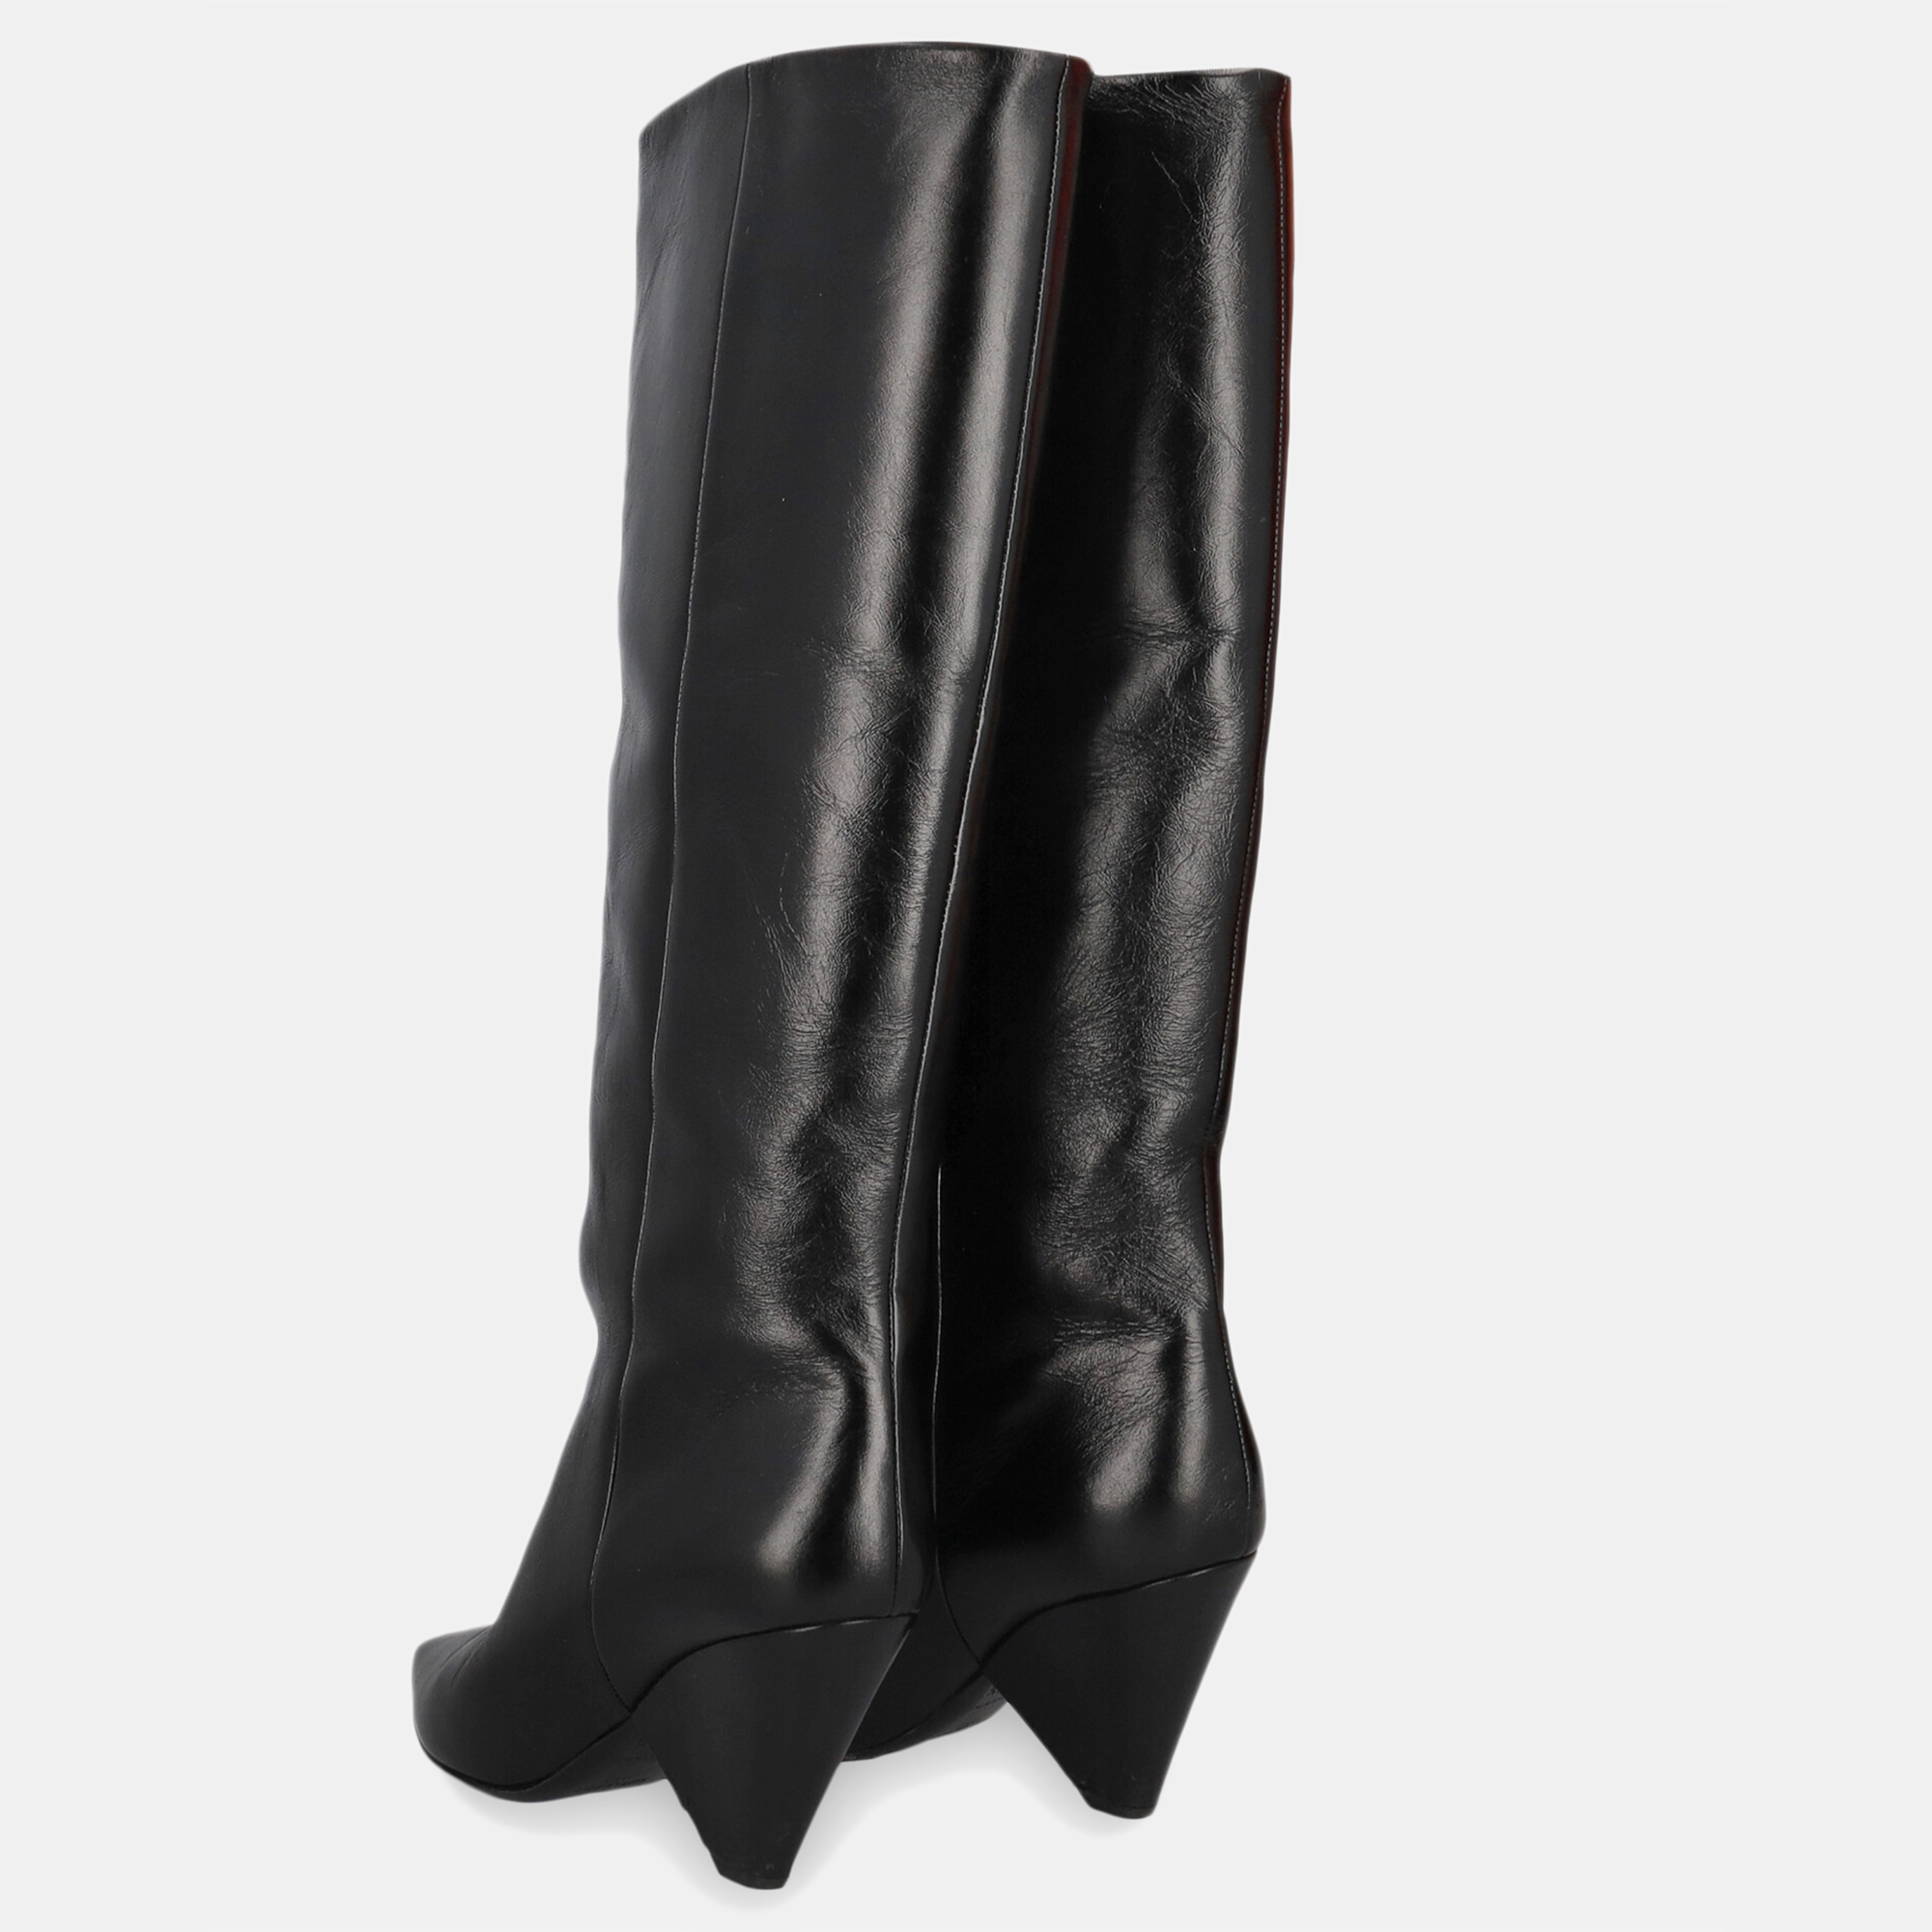 Saint Laurent  Women's Leather Boots - Black - EU 37.5